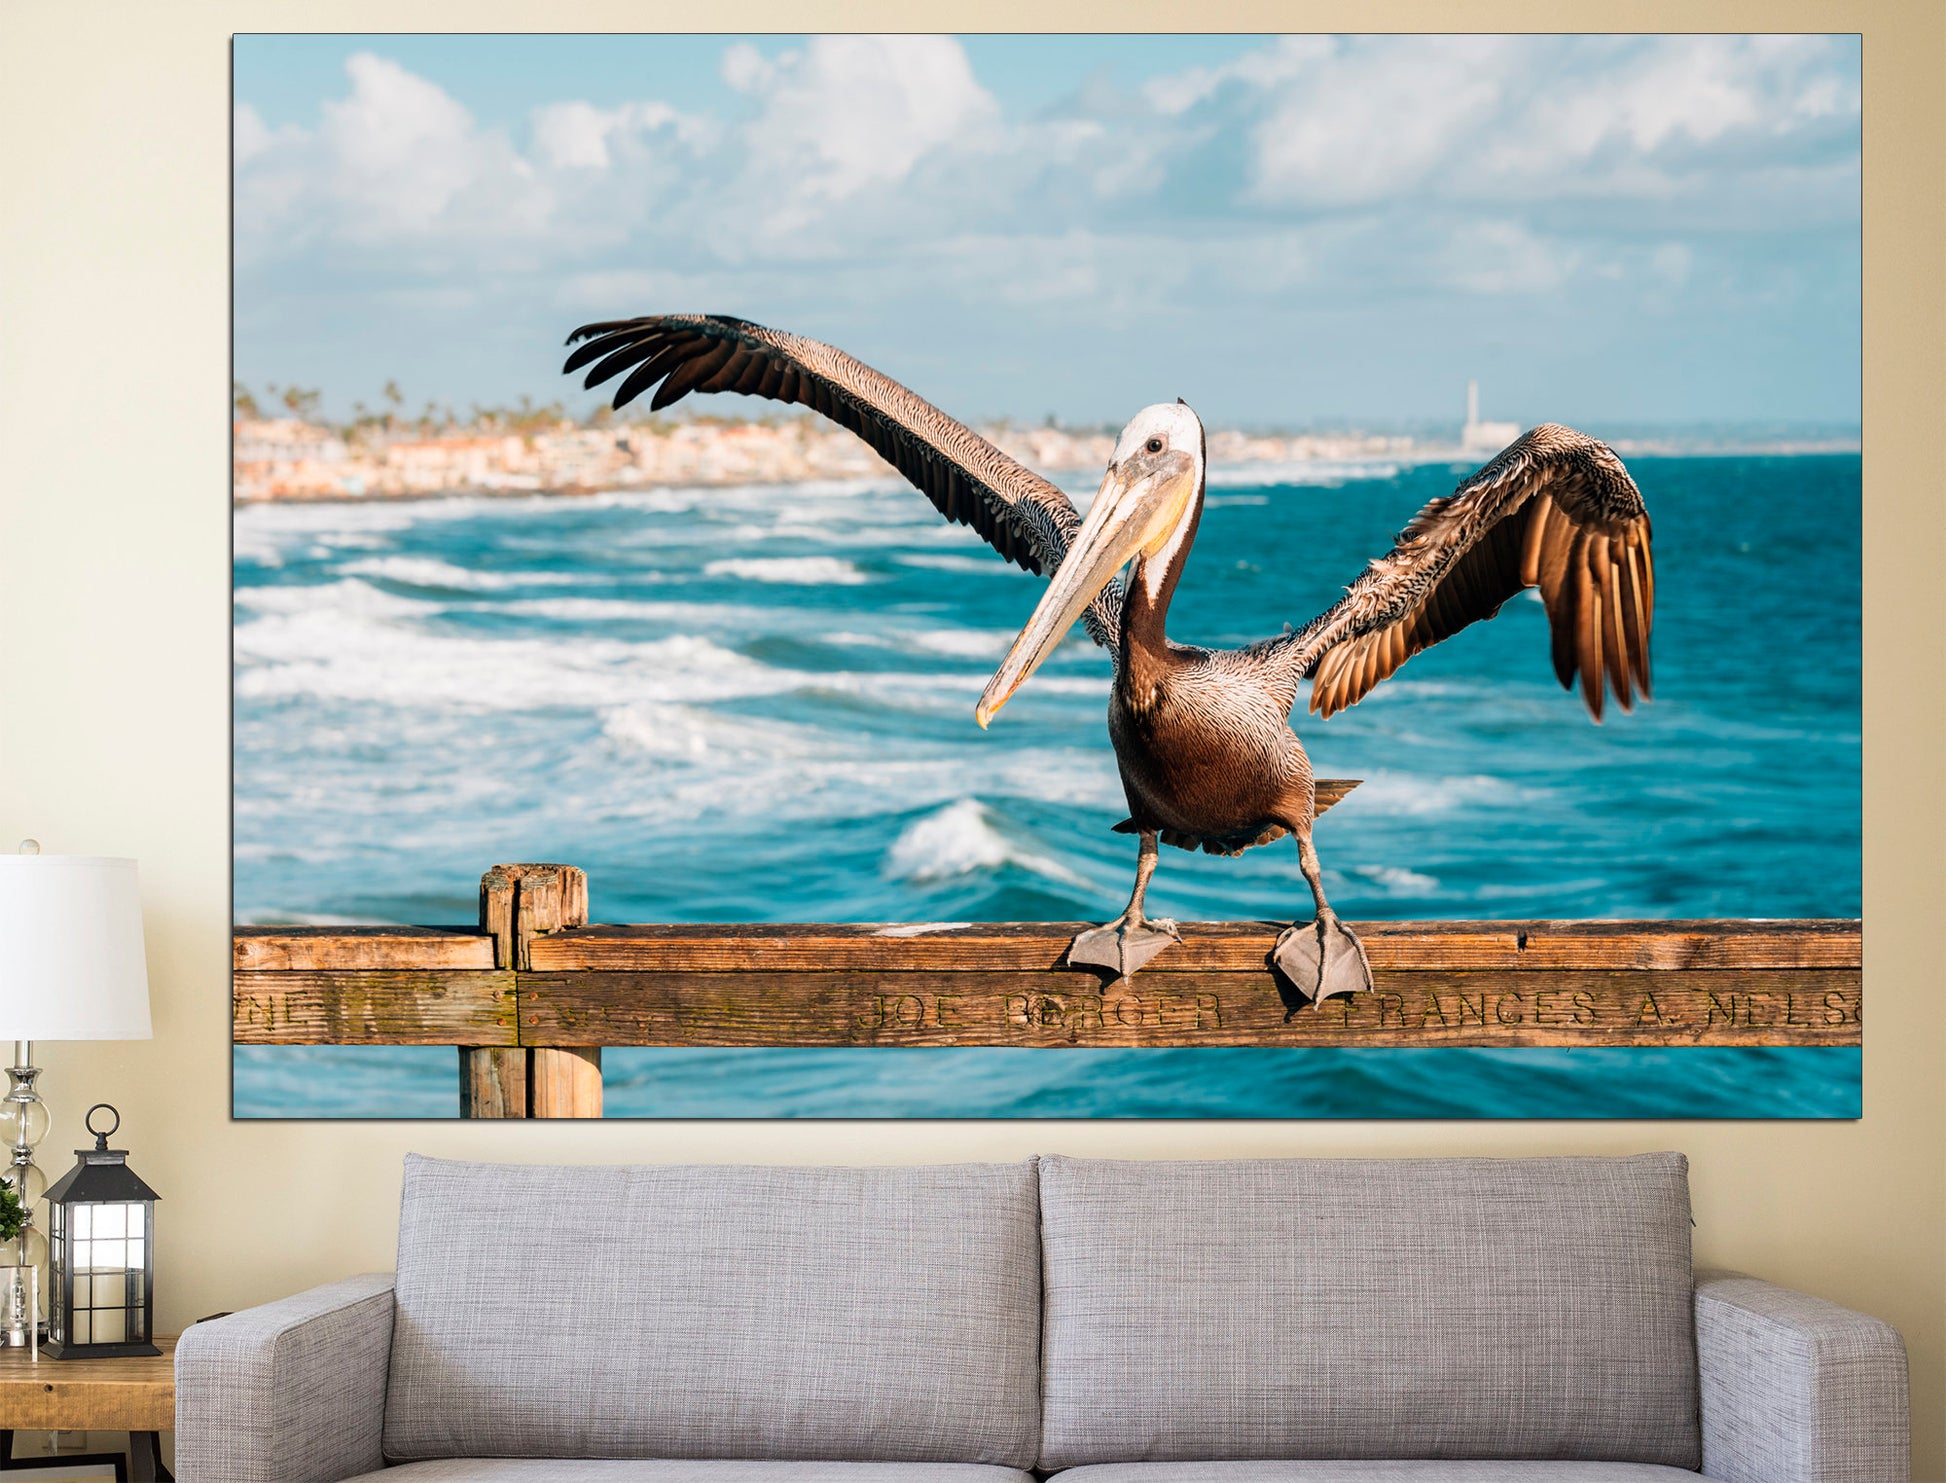 Pelican wall art Bird wall decor Coastal wall art, Pelican art Beach wall decor Home decor wall art